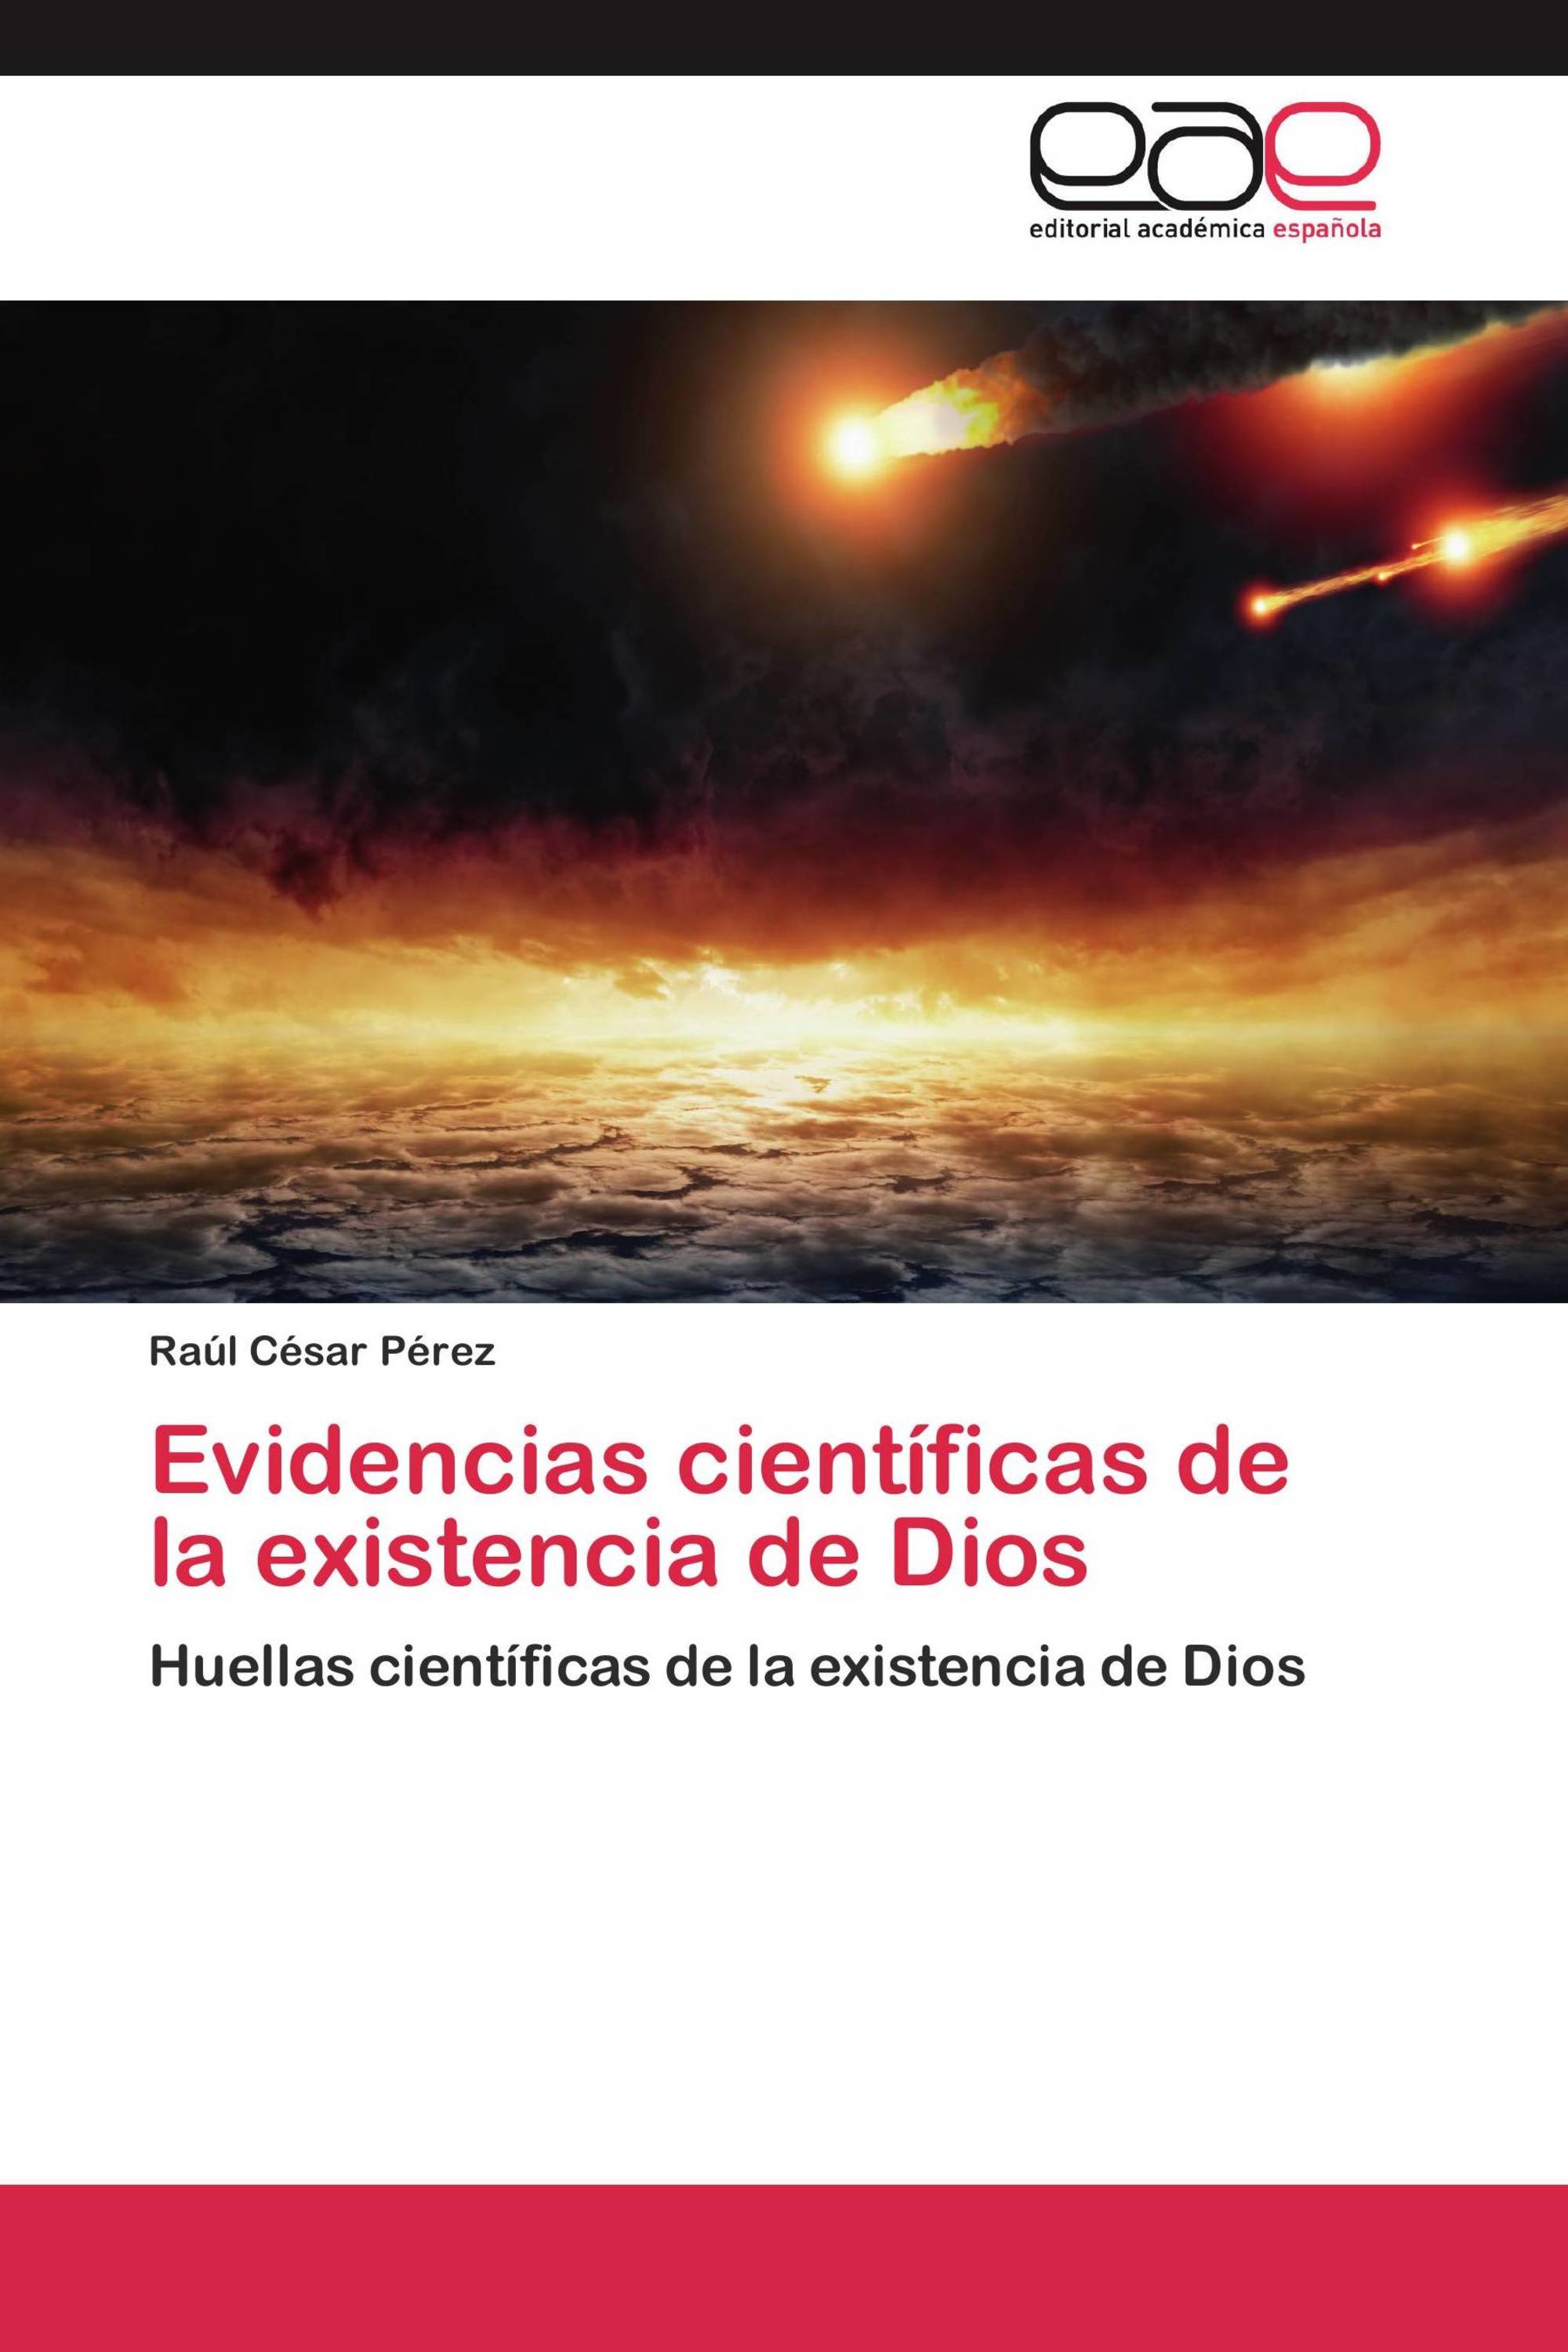 Existen pruebas científicas de la existencia de Dios?